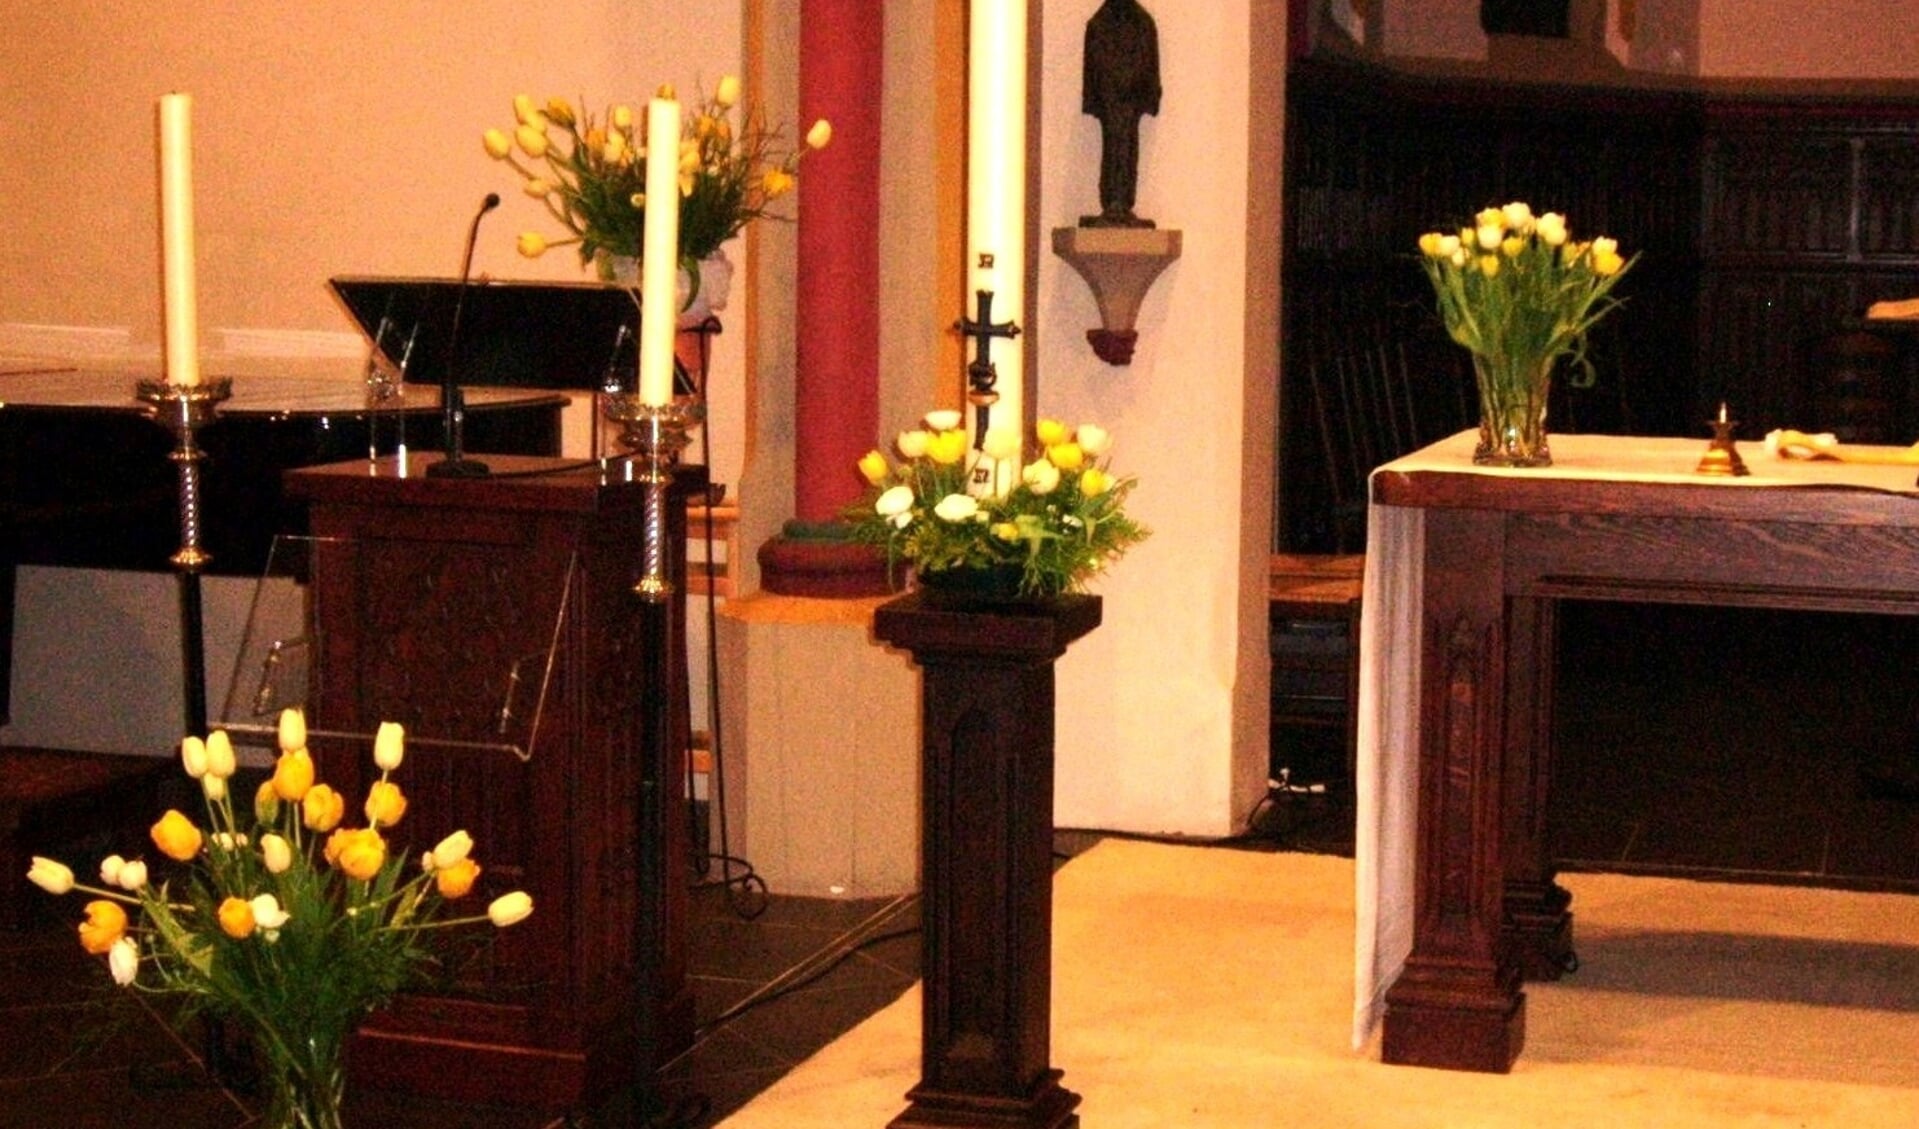 Paaskaars met andere kaarsen en bloemen in de kloosterkapel. (foto: Annetje Geertsen)